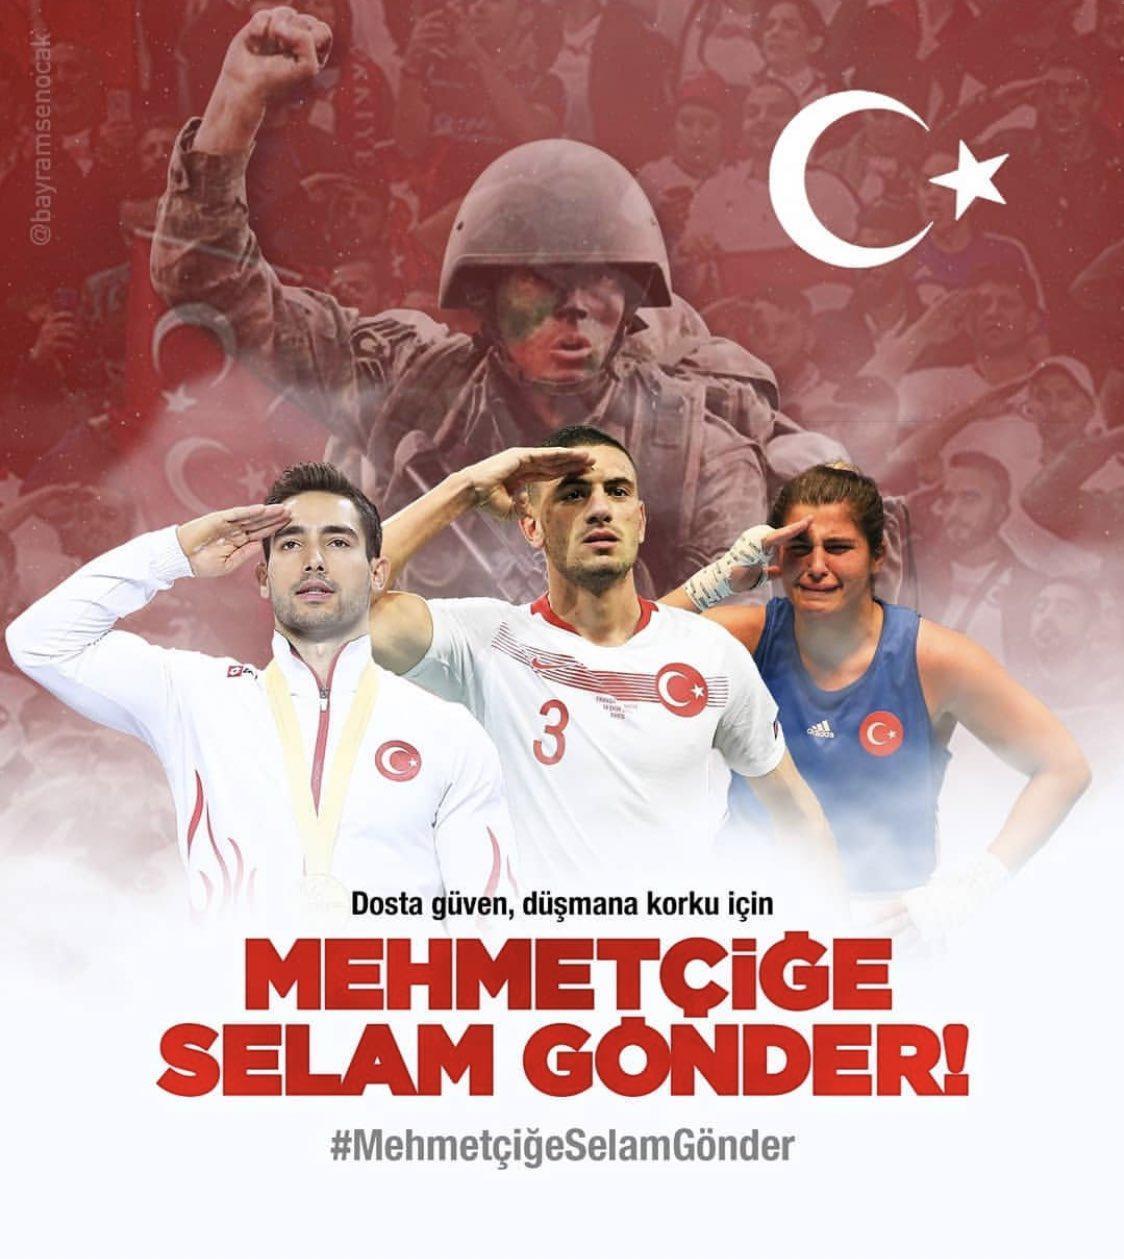 MSBden, Mehmetçiğe selam gönder kampanyası